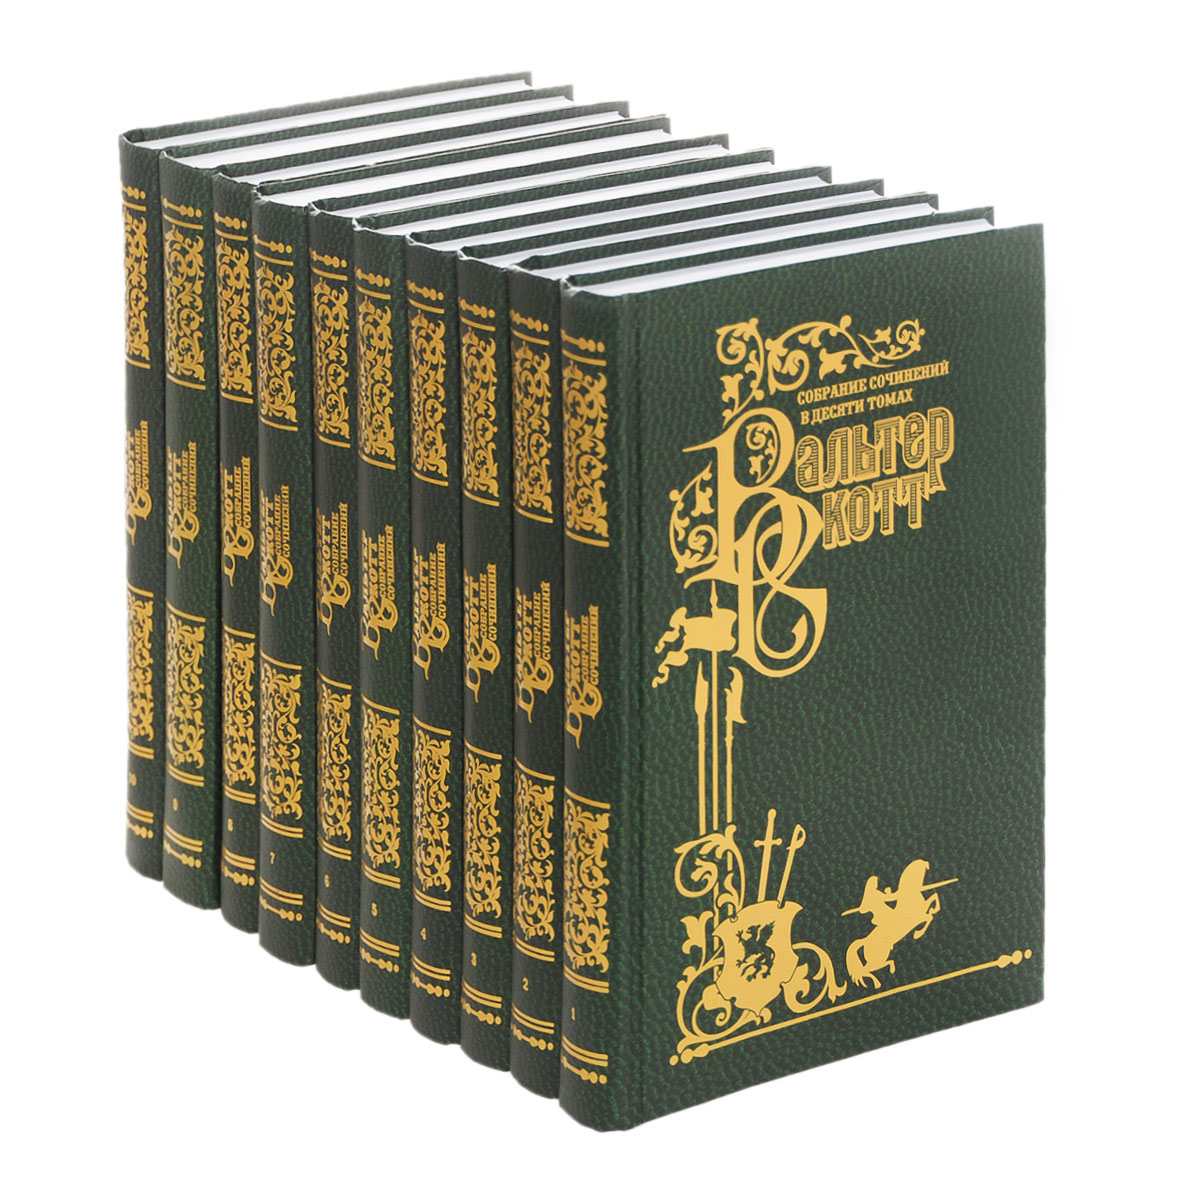 Вальтер Скотт. Собрание сочинений в 10 томах (комплект). Вальтер Скотт